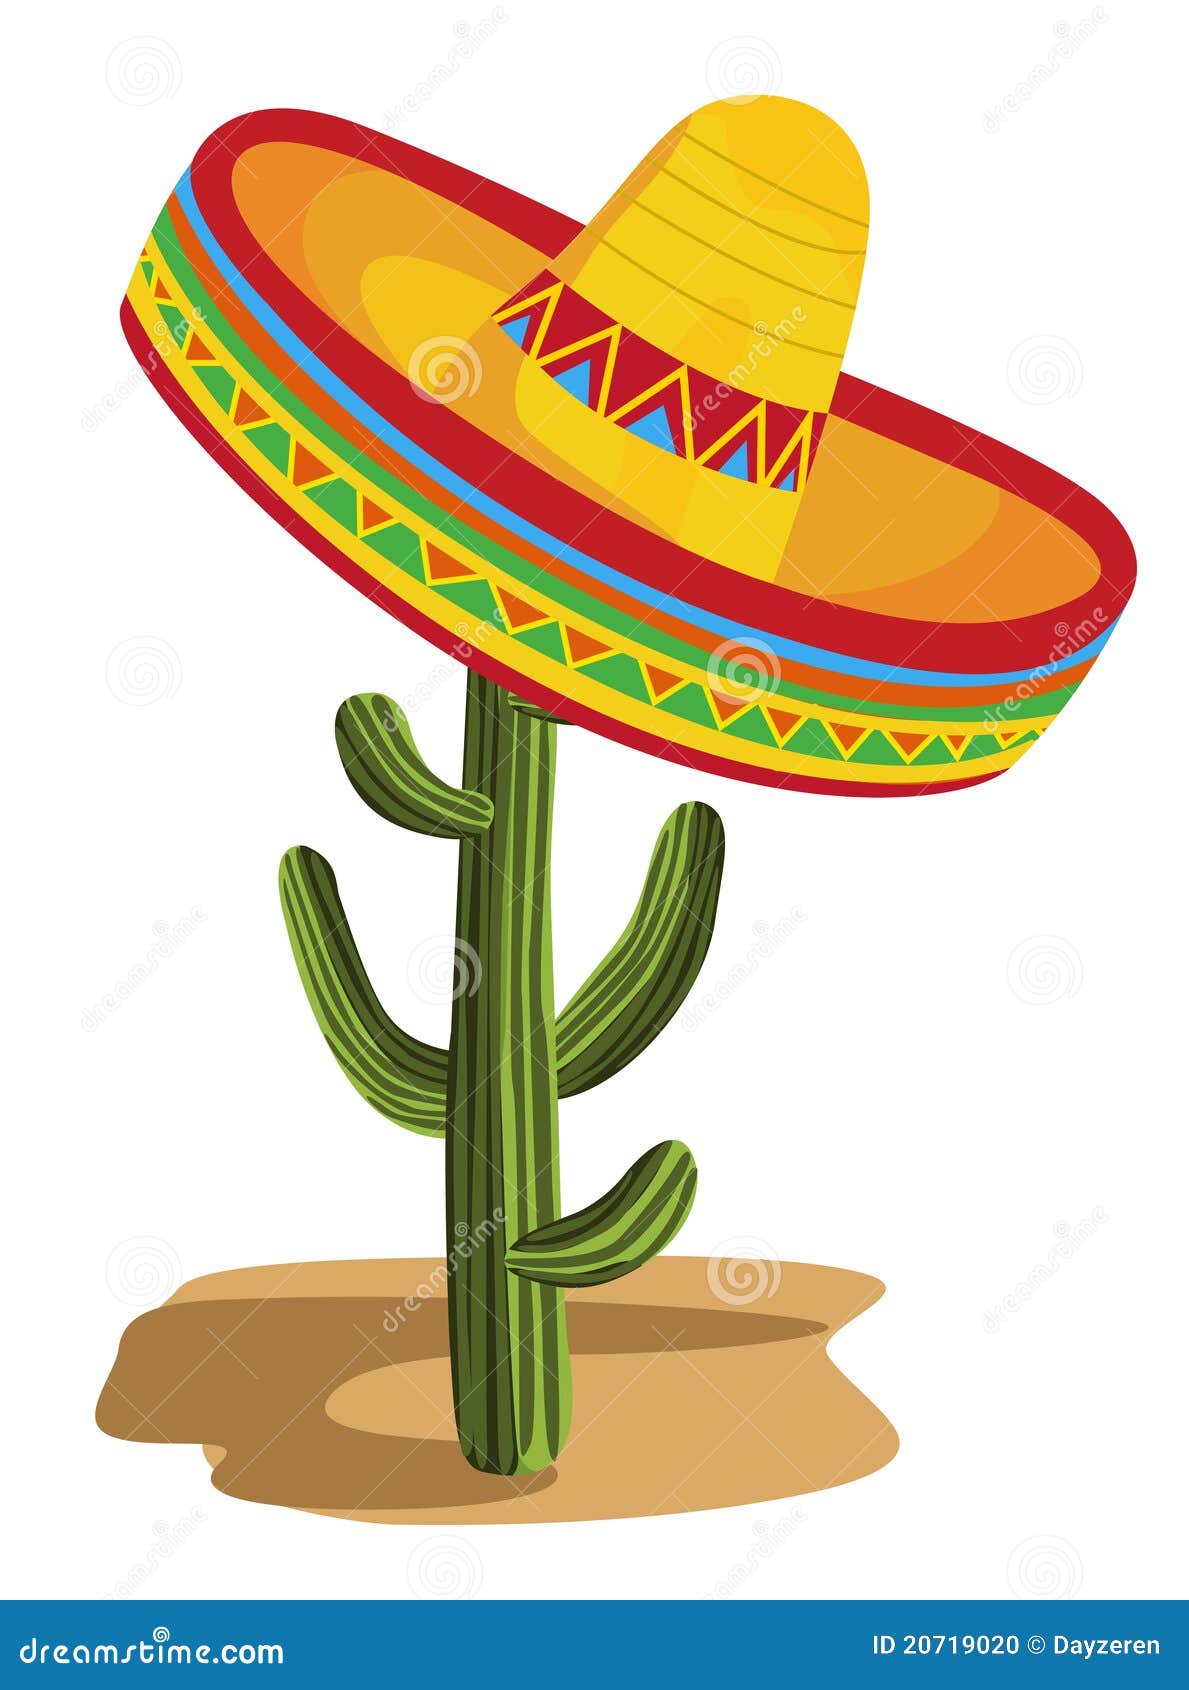 sombrero on cactus